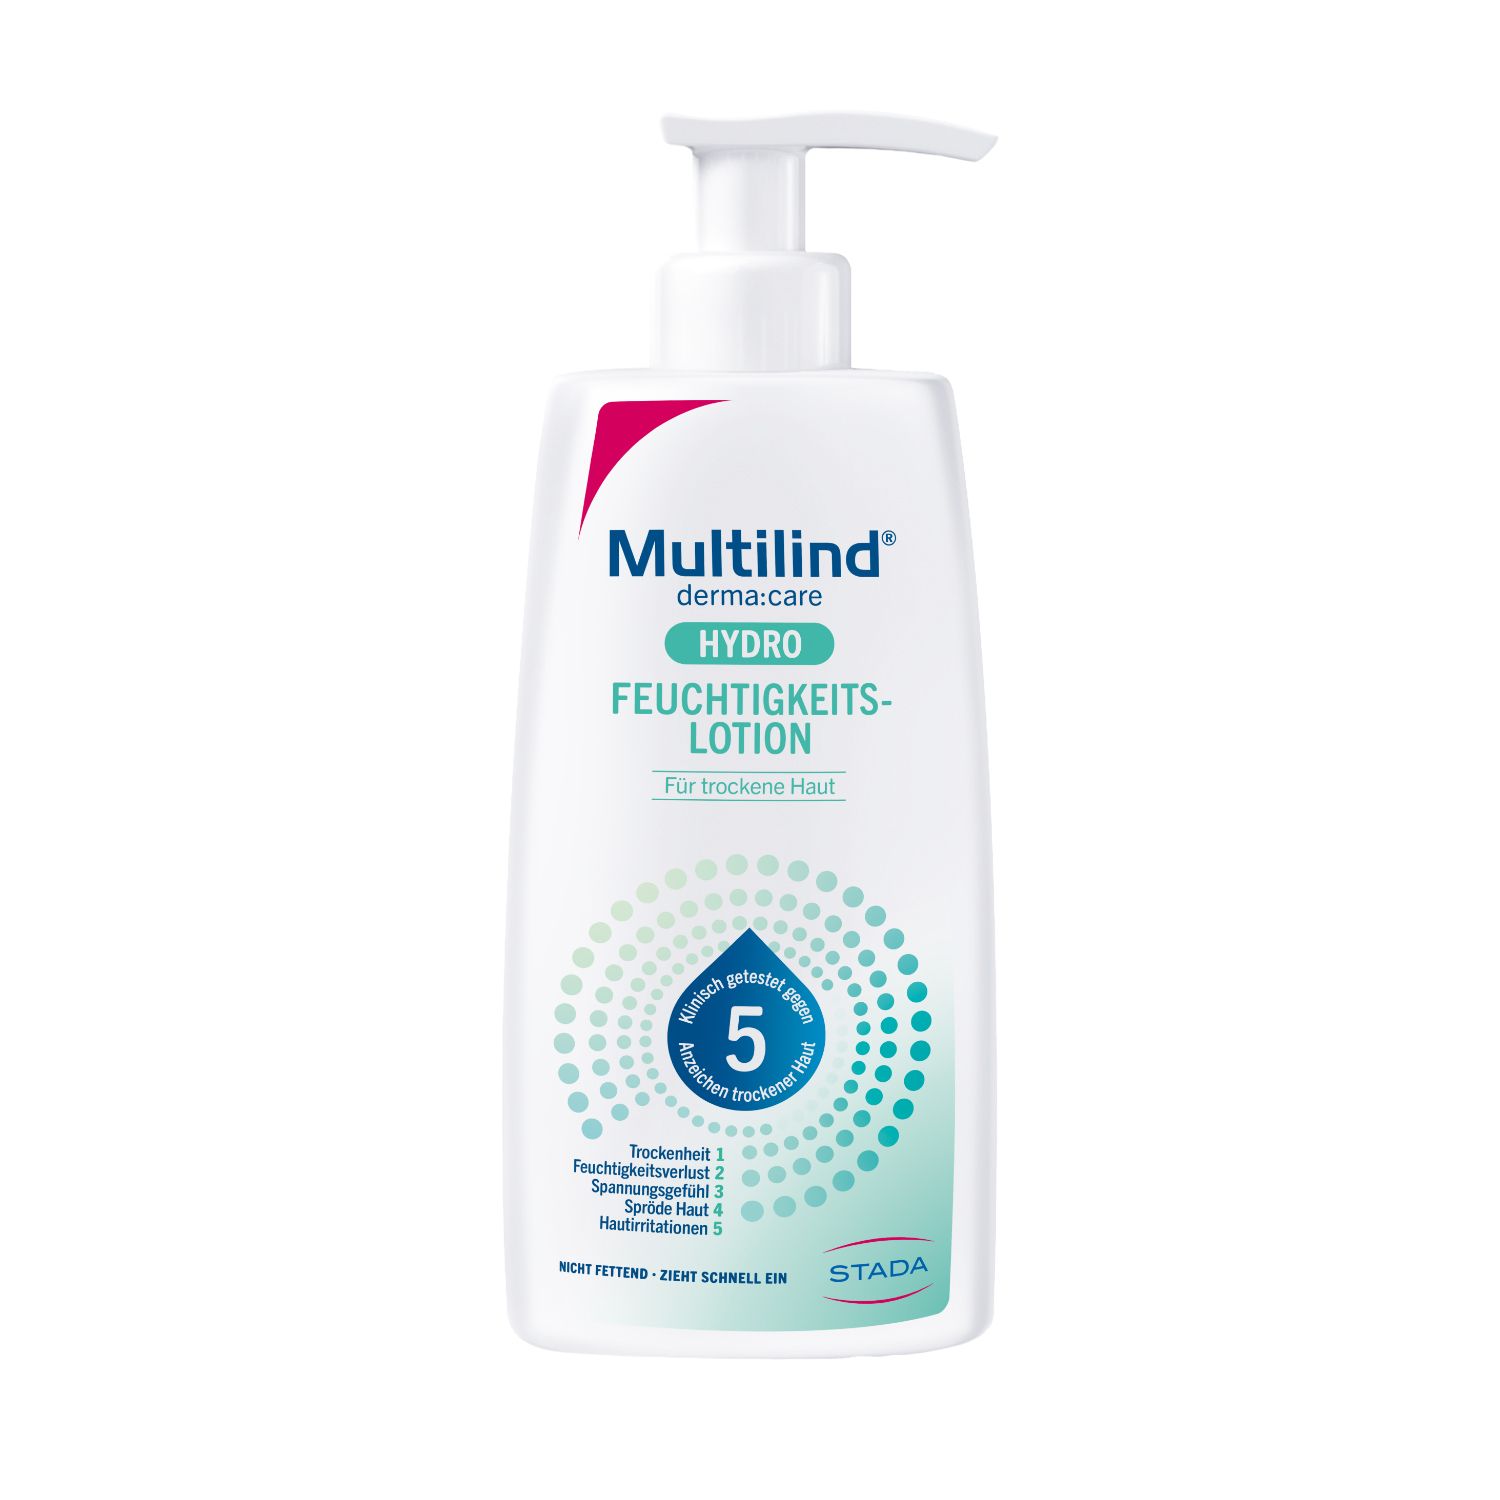 Multilind® derma:care Hydro Feuchtigkeitslotion: tägliche Feuchtigkeit für trockene Haut. Wirkt sofort und langanhaltend